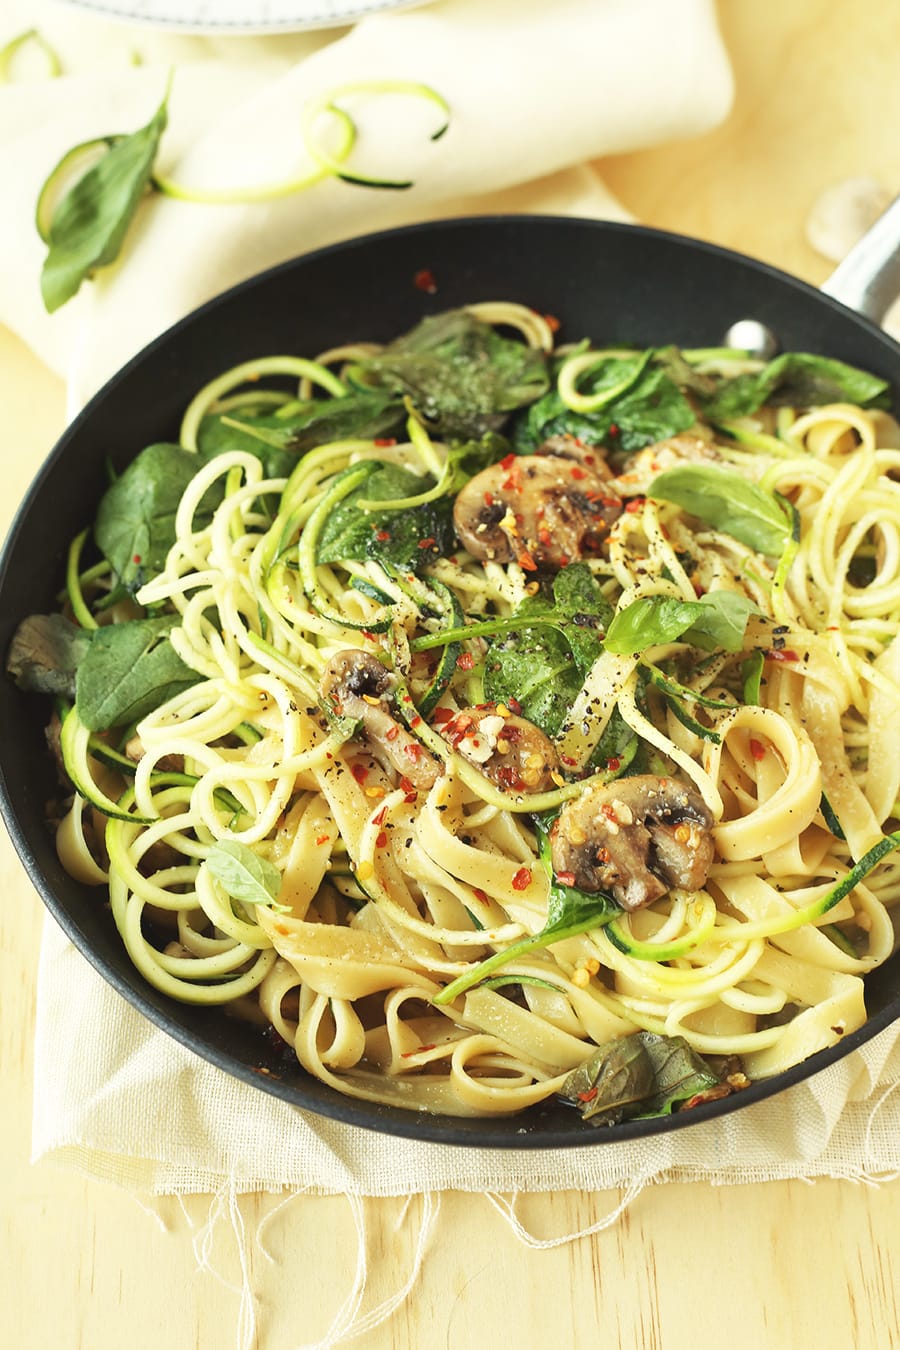 Zucchini Aglio E Olio with Mushrooms | Crazy Vegan Kitchen